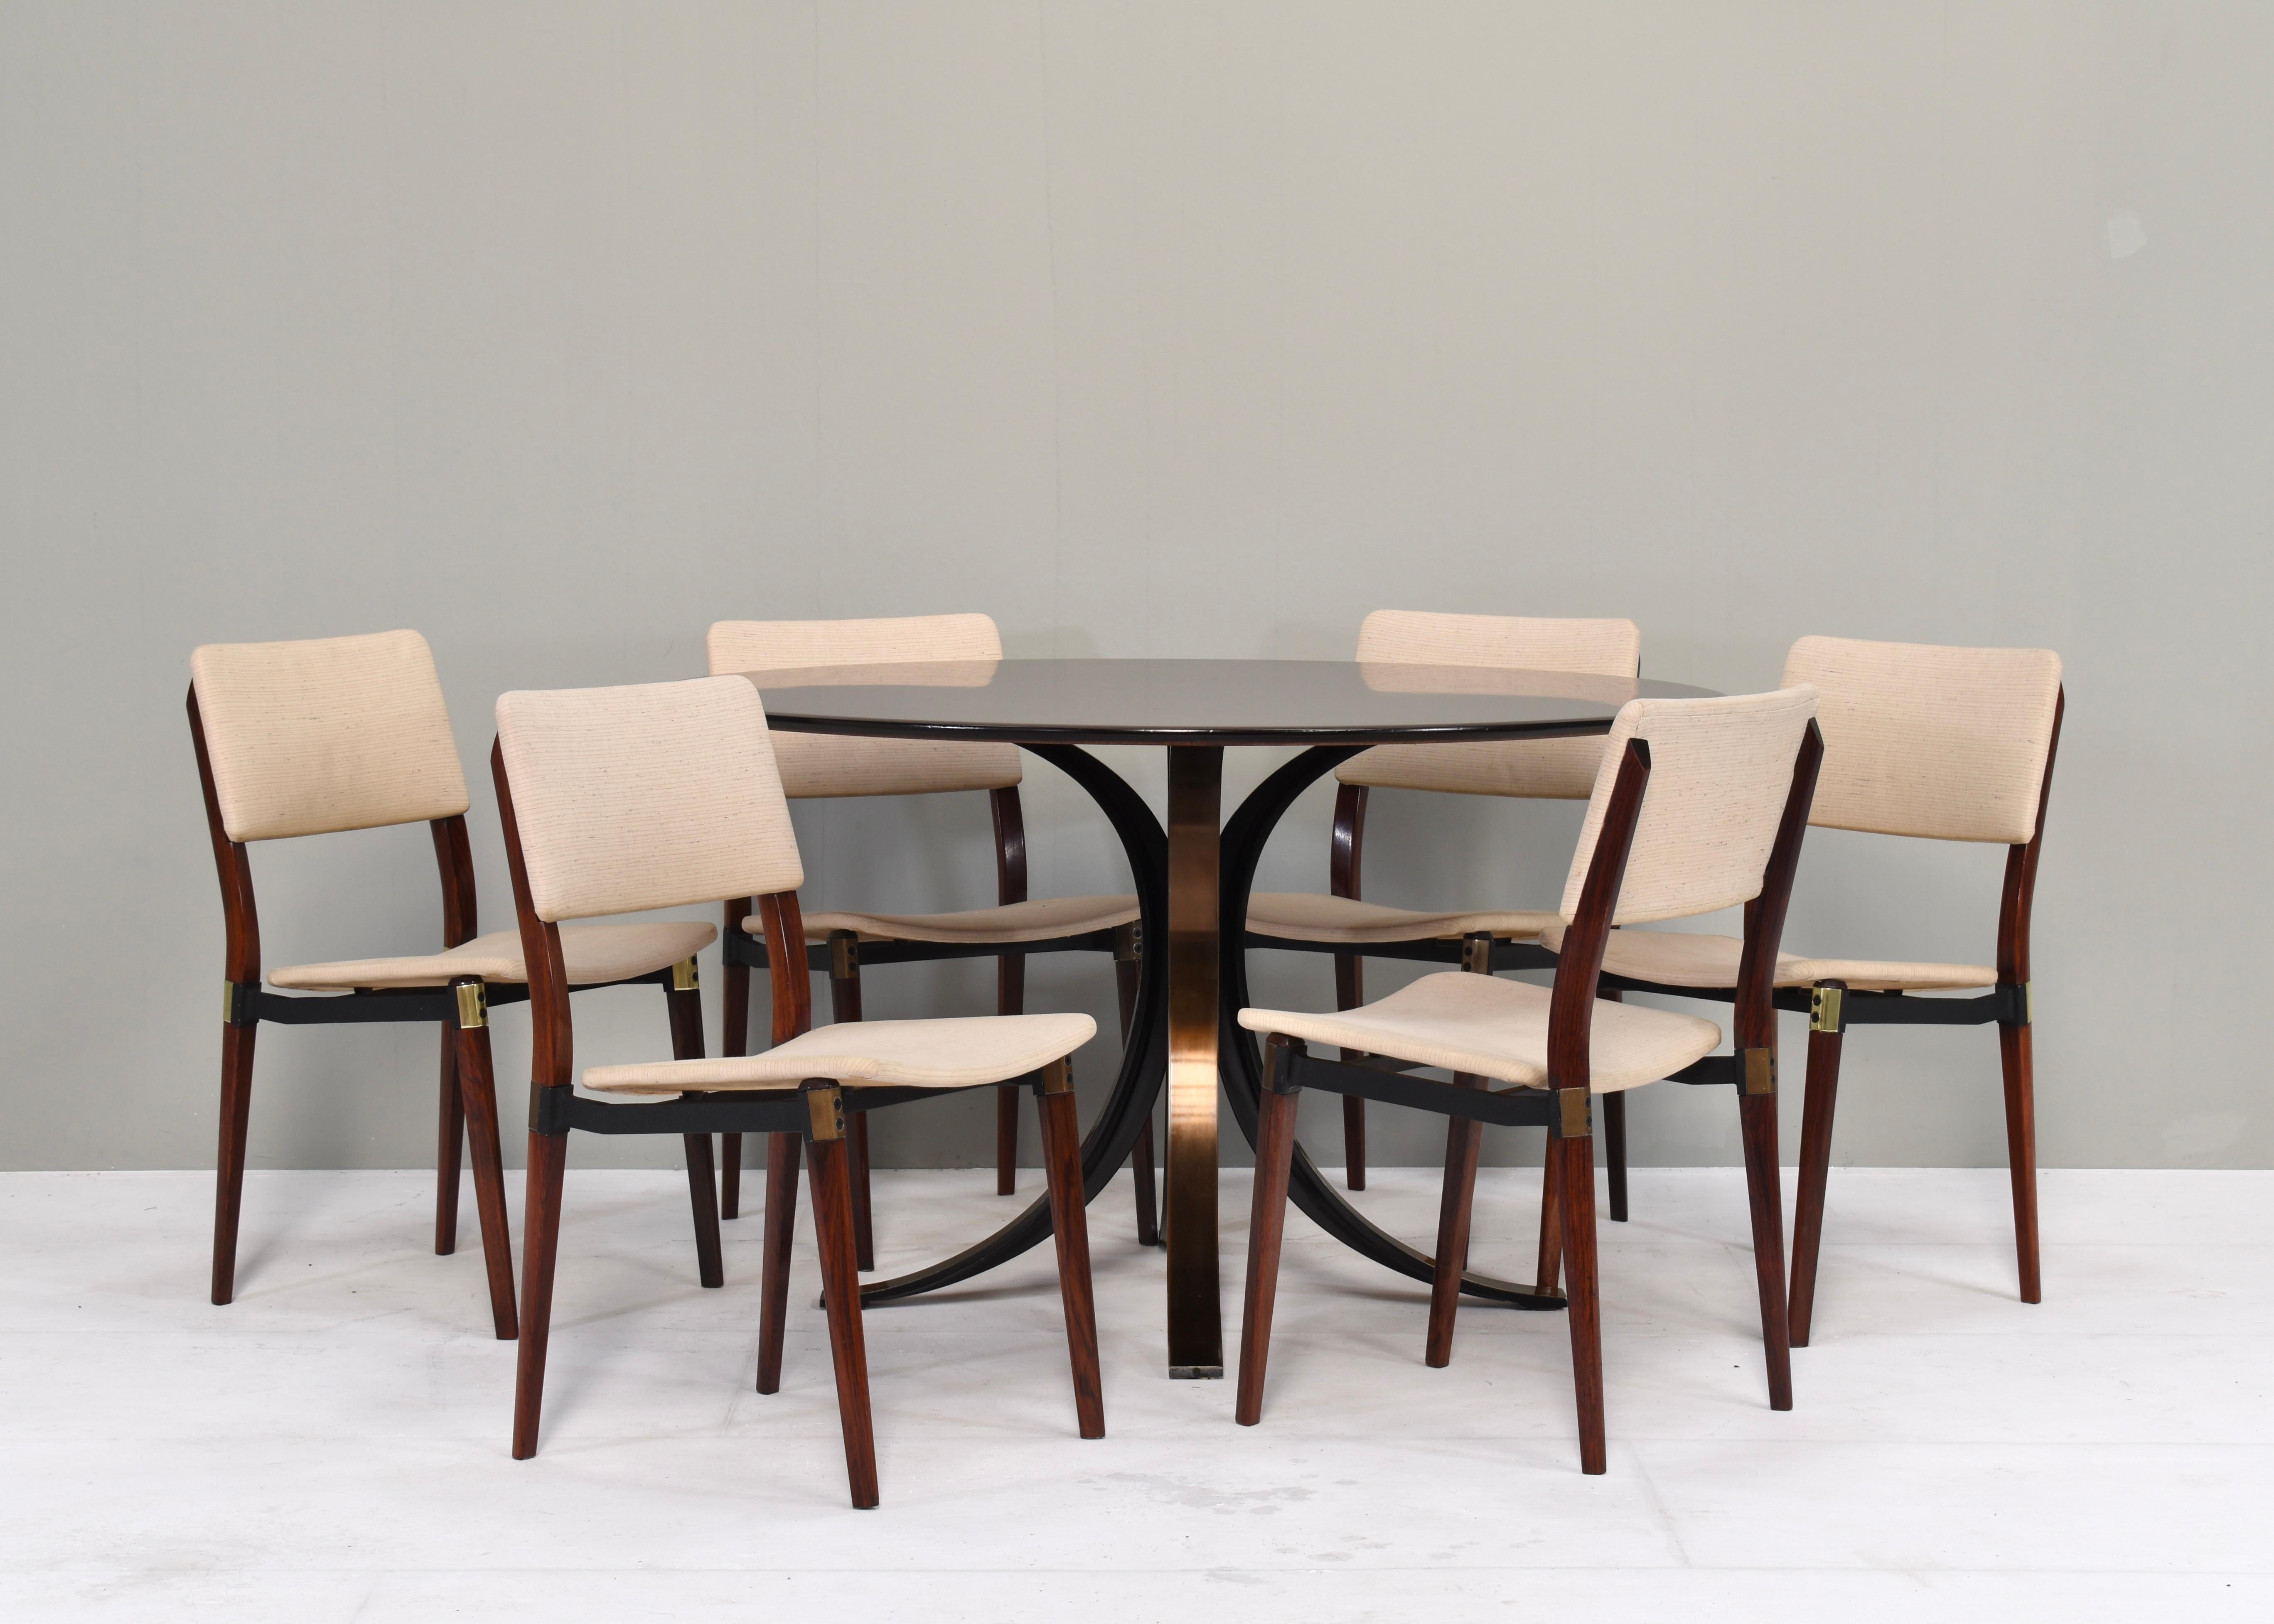 Table de salle à manger iconique et six chaises de salle à manger par Osvaldo Borsani et Eugenio Gerli pour TECNO, Italie - circa 1960. Quatre chaises ont des détails en métal galvanisé et deux chaises ont des détails en laiton.
Designer : Osvaldo